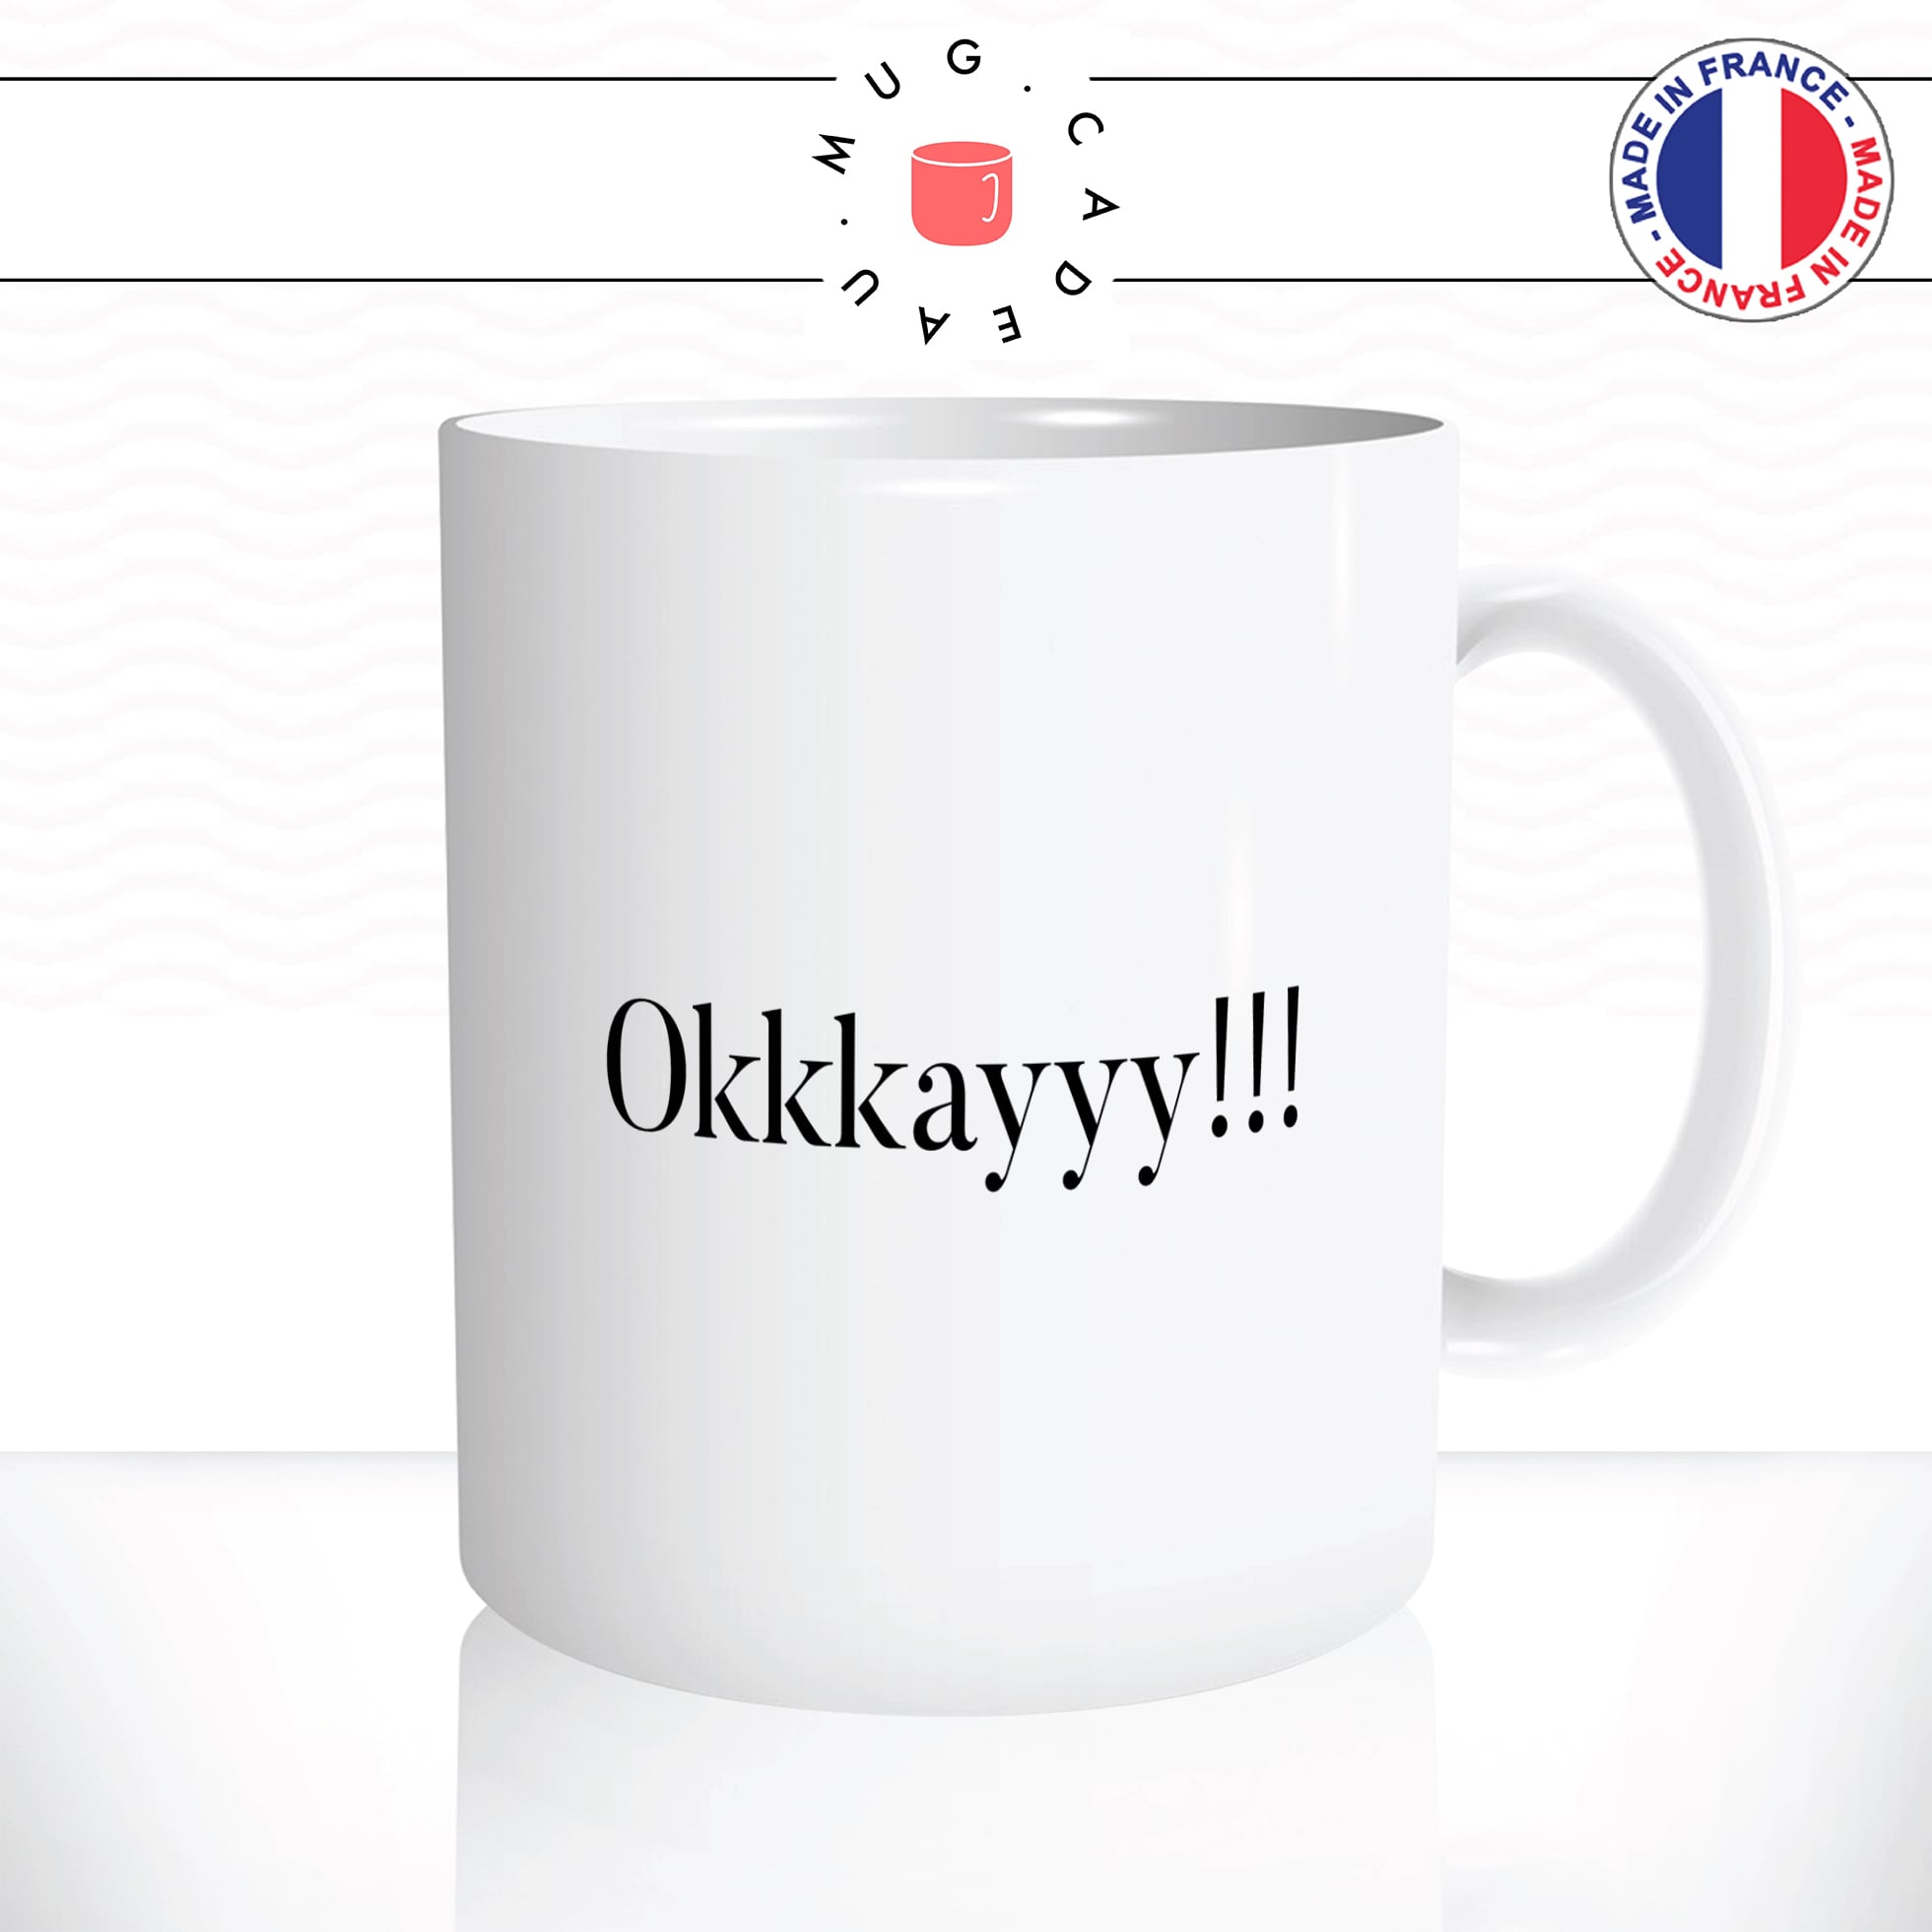 mug-tasse-okkkayyy-les-visiteur-jackouille-la-fripouille-okay-ok-francais-film-culte-humour-drole-fun-idée-cadeau-original-café-personnalisée2-min